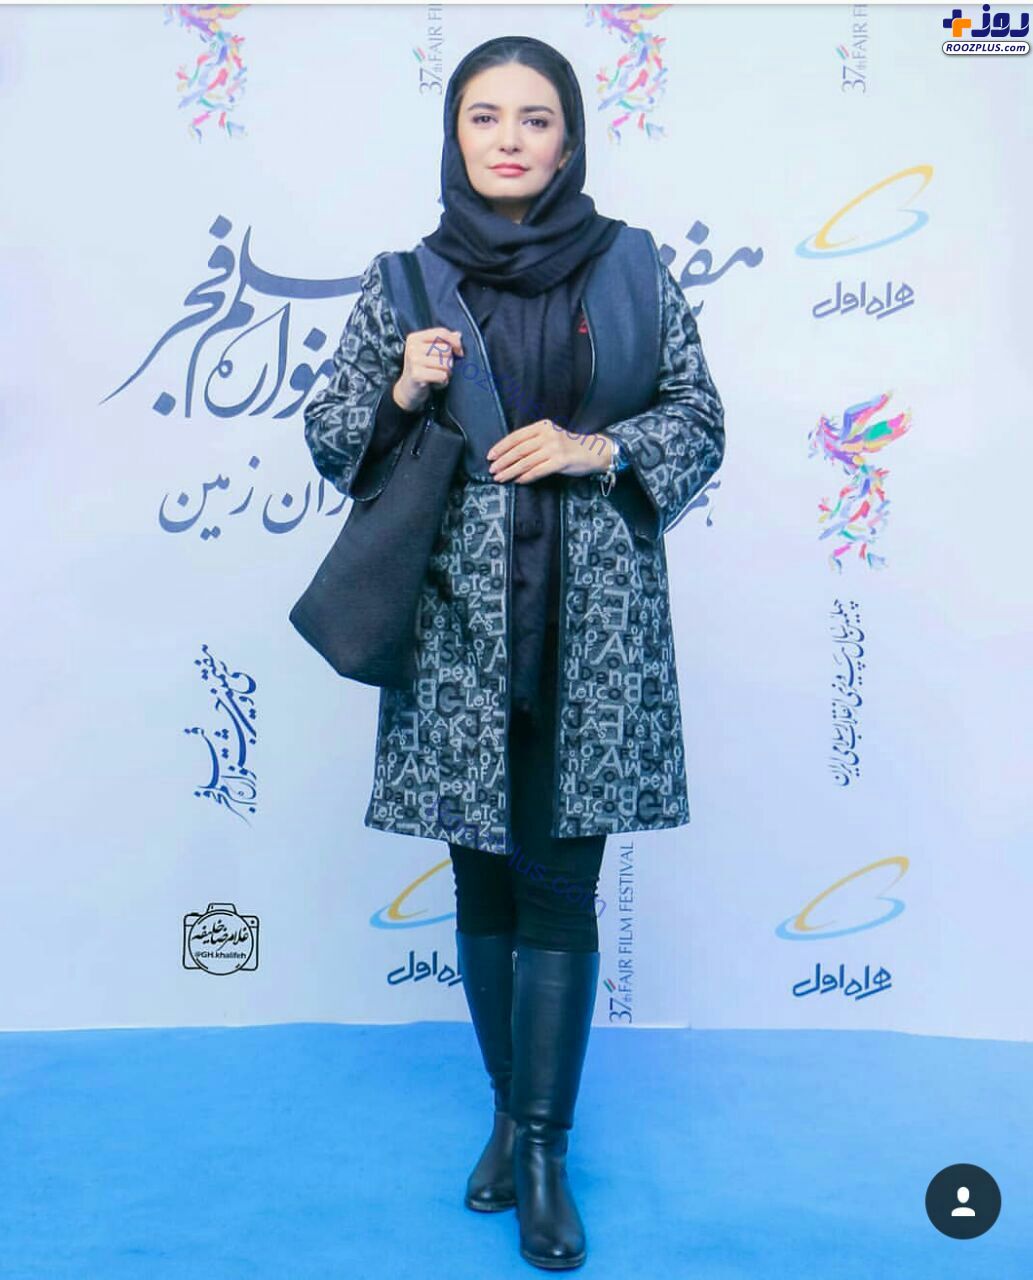 حضور متفاوت لیندا کیانی در جشنواره فیام فجر+عکس